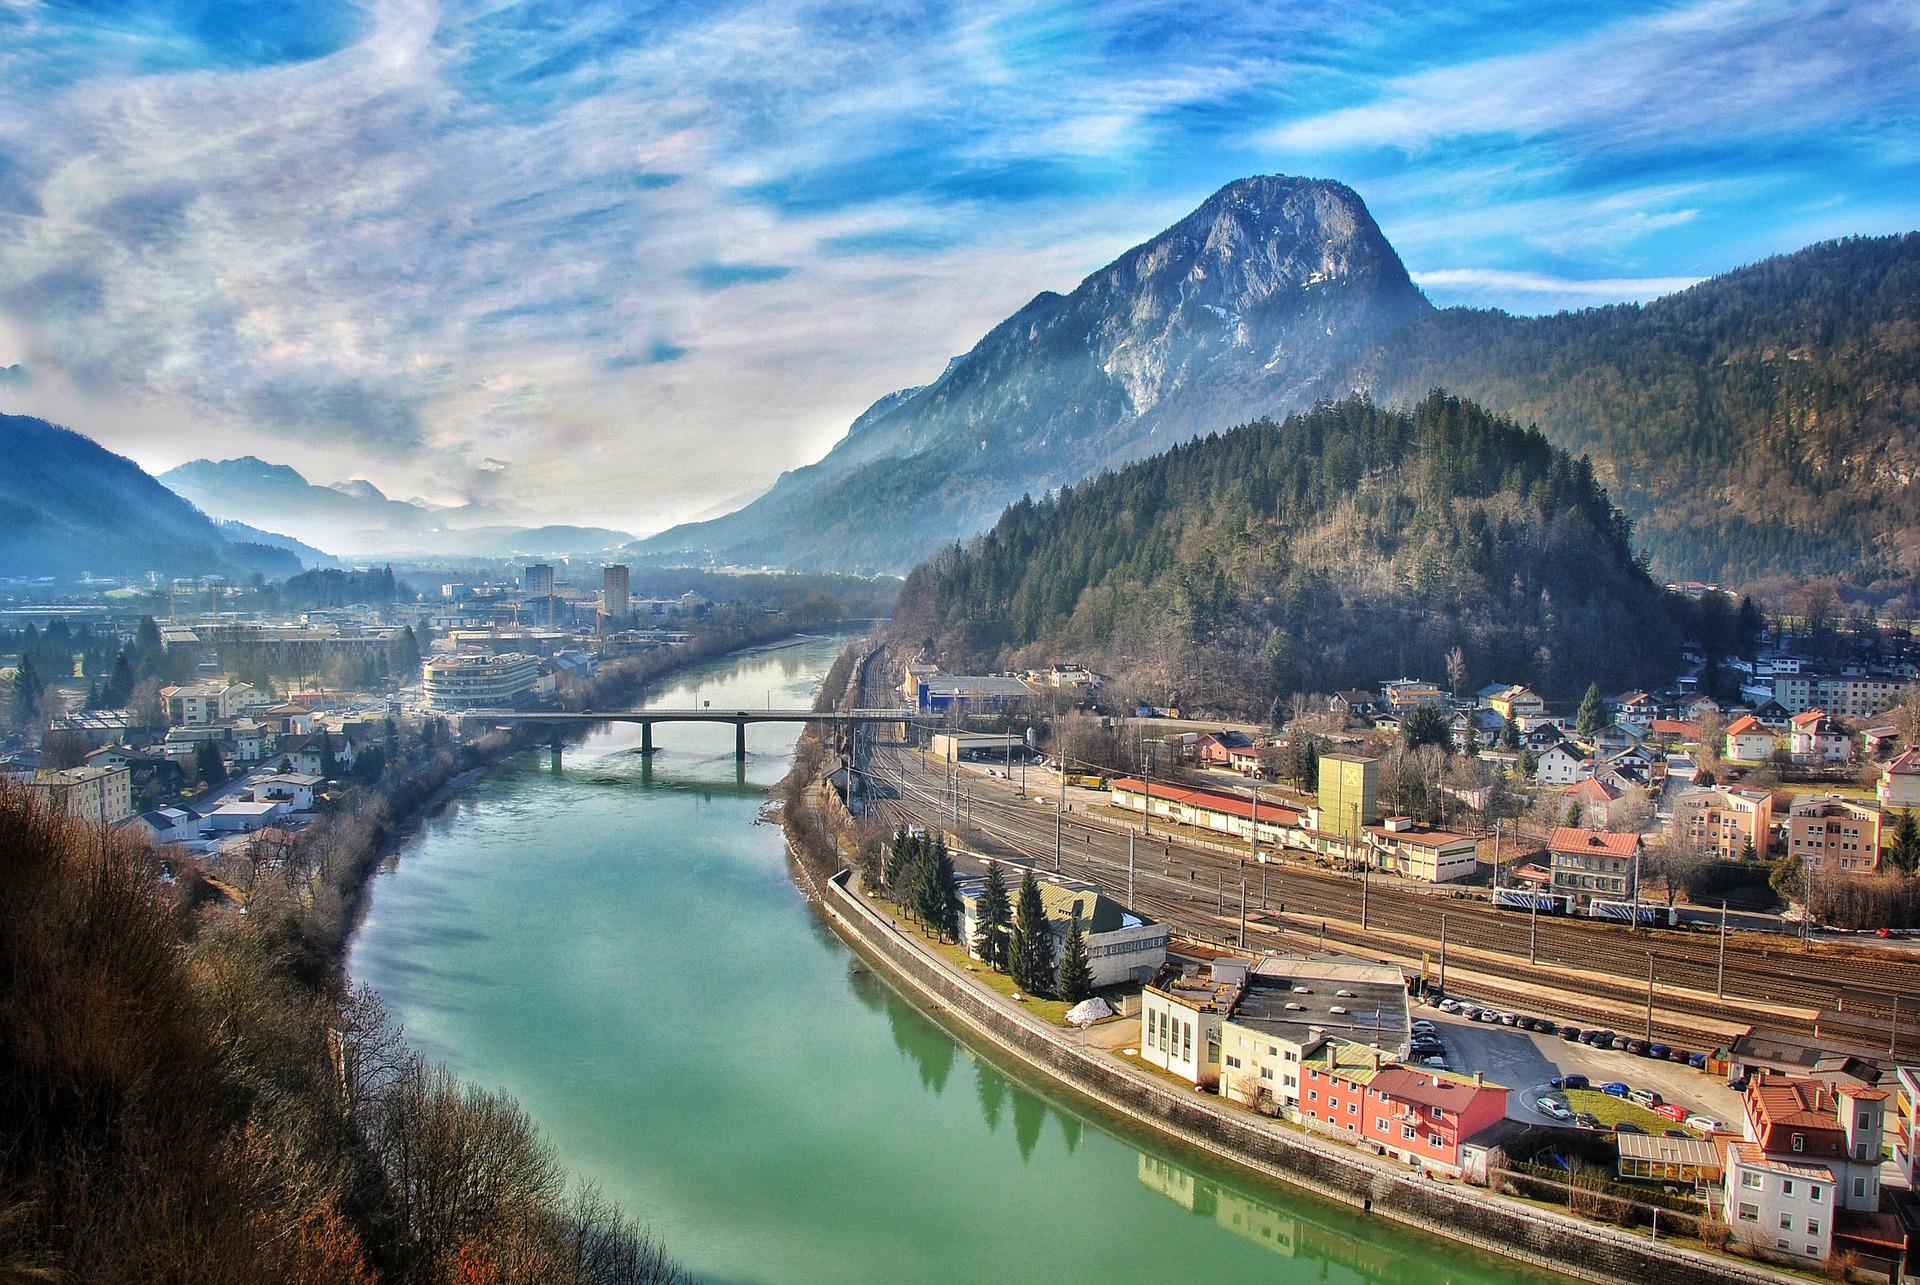 Luftbild von Kufstein mit dem Fluss Inn